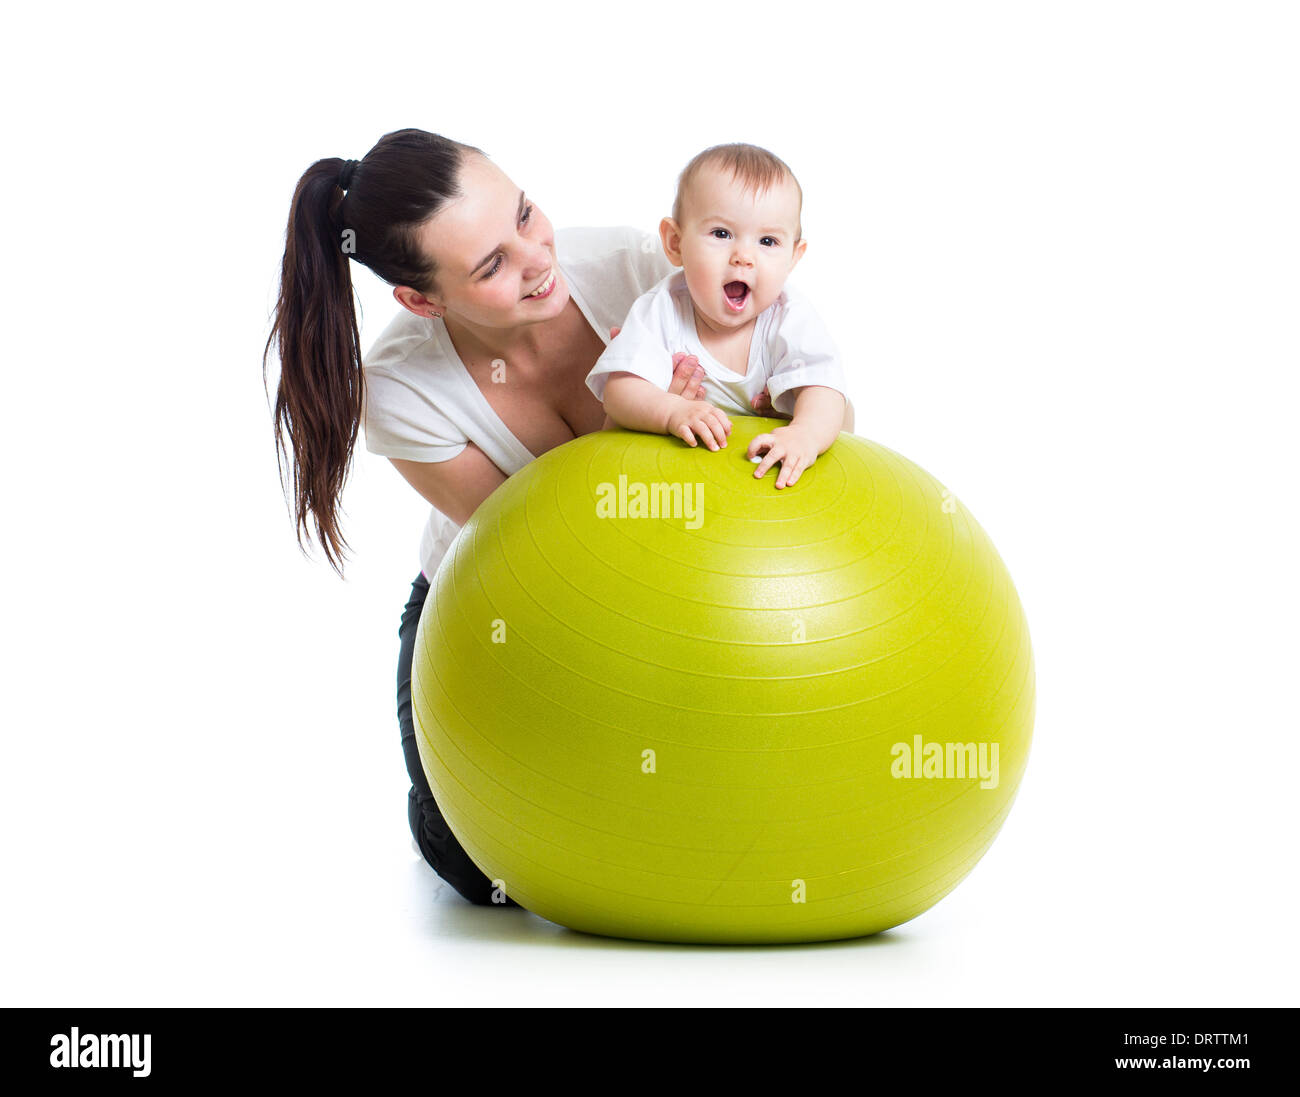 La gymnastique pour bébé avec fitness ball Banque D'Images